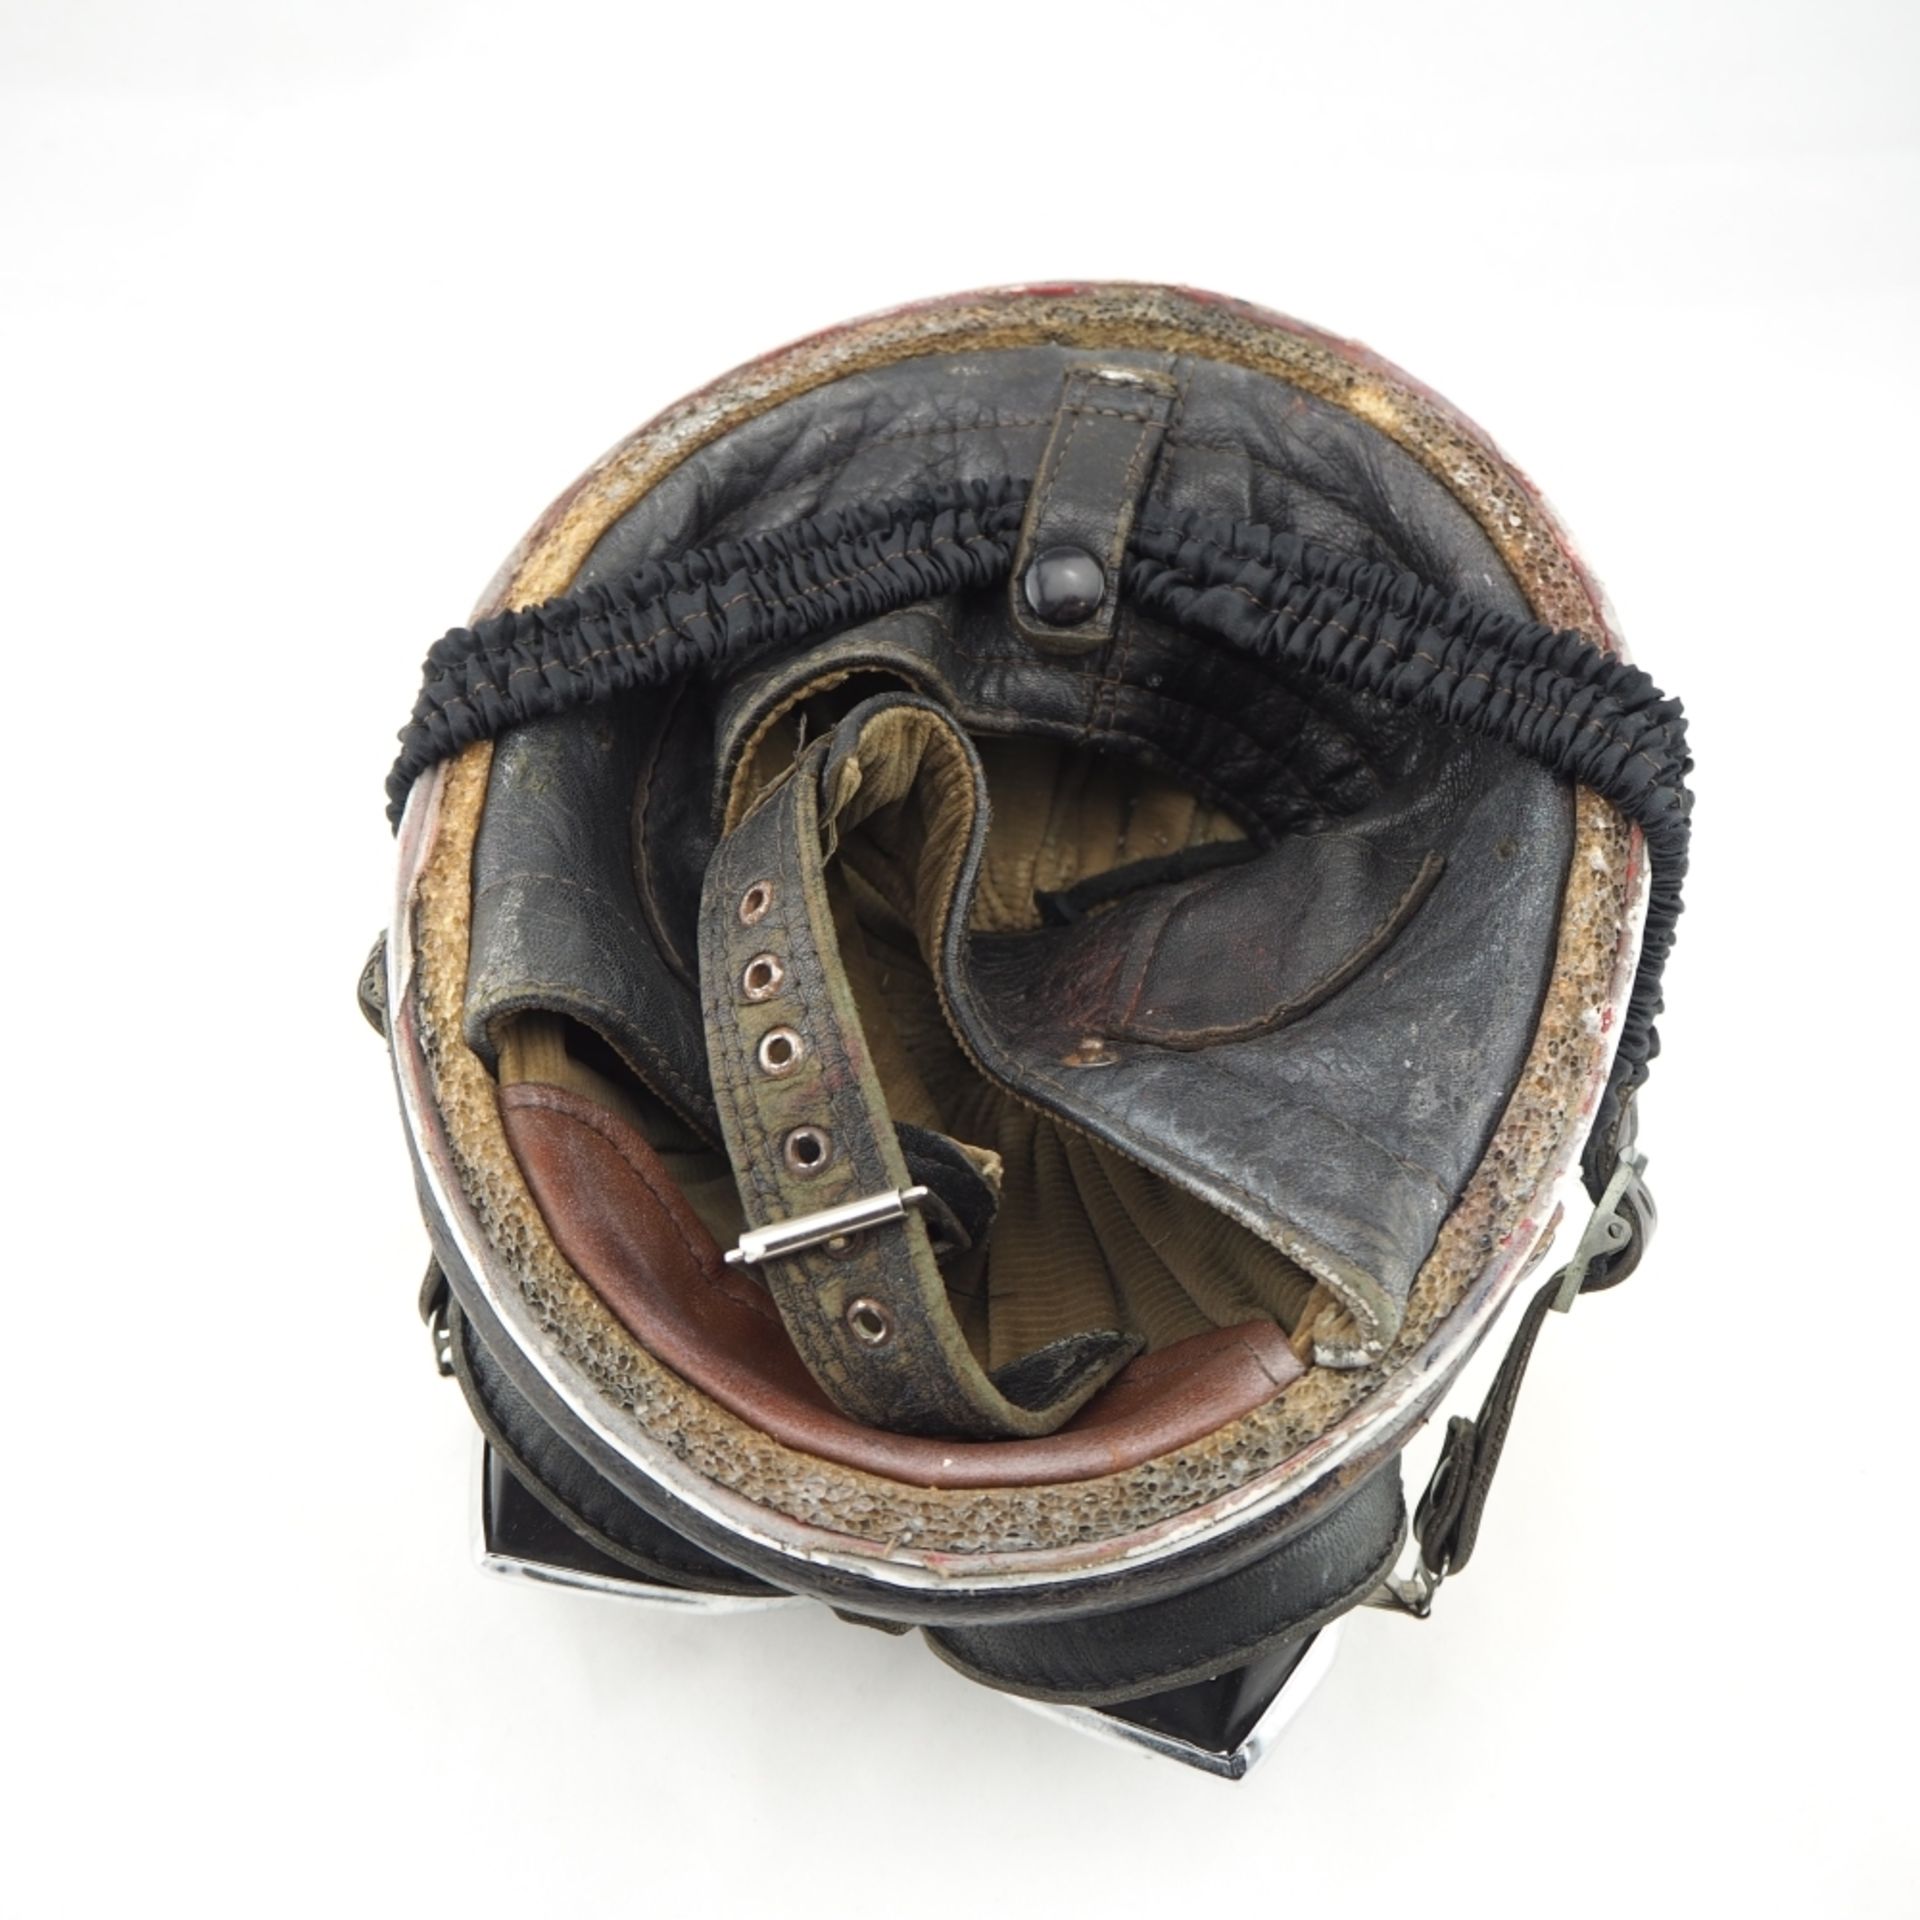 Motorrad-Helm, wohl 50er Jahre,Blech und Leder, mit Original-Brille. Gebraucht mit Spure - Bild 4 aus 4